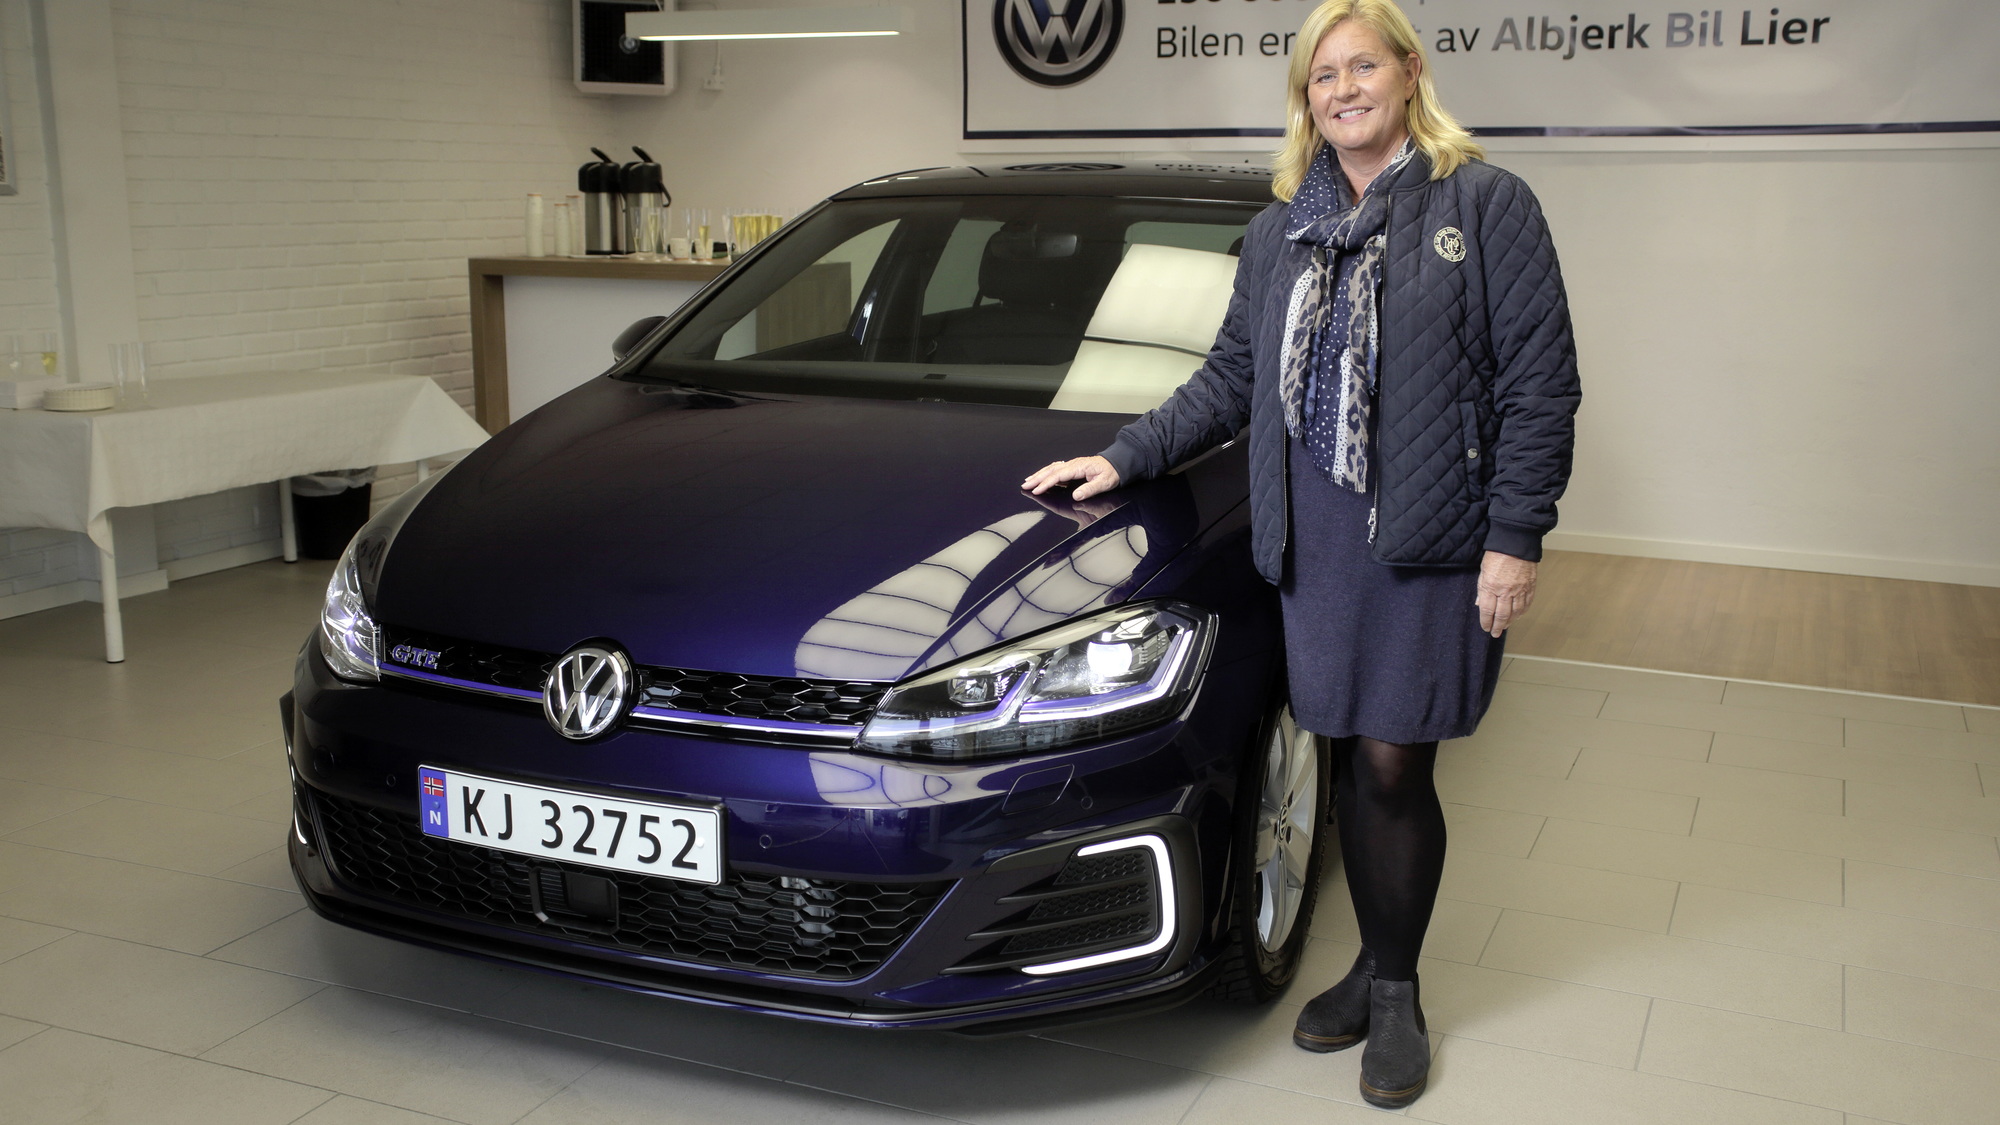 150 millionth Volkswagen delivered